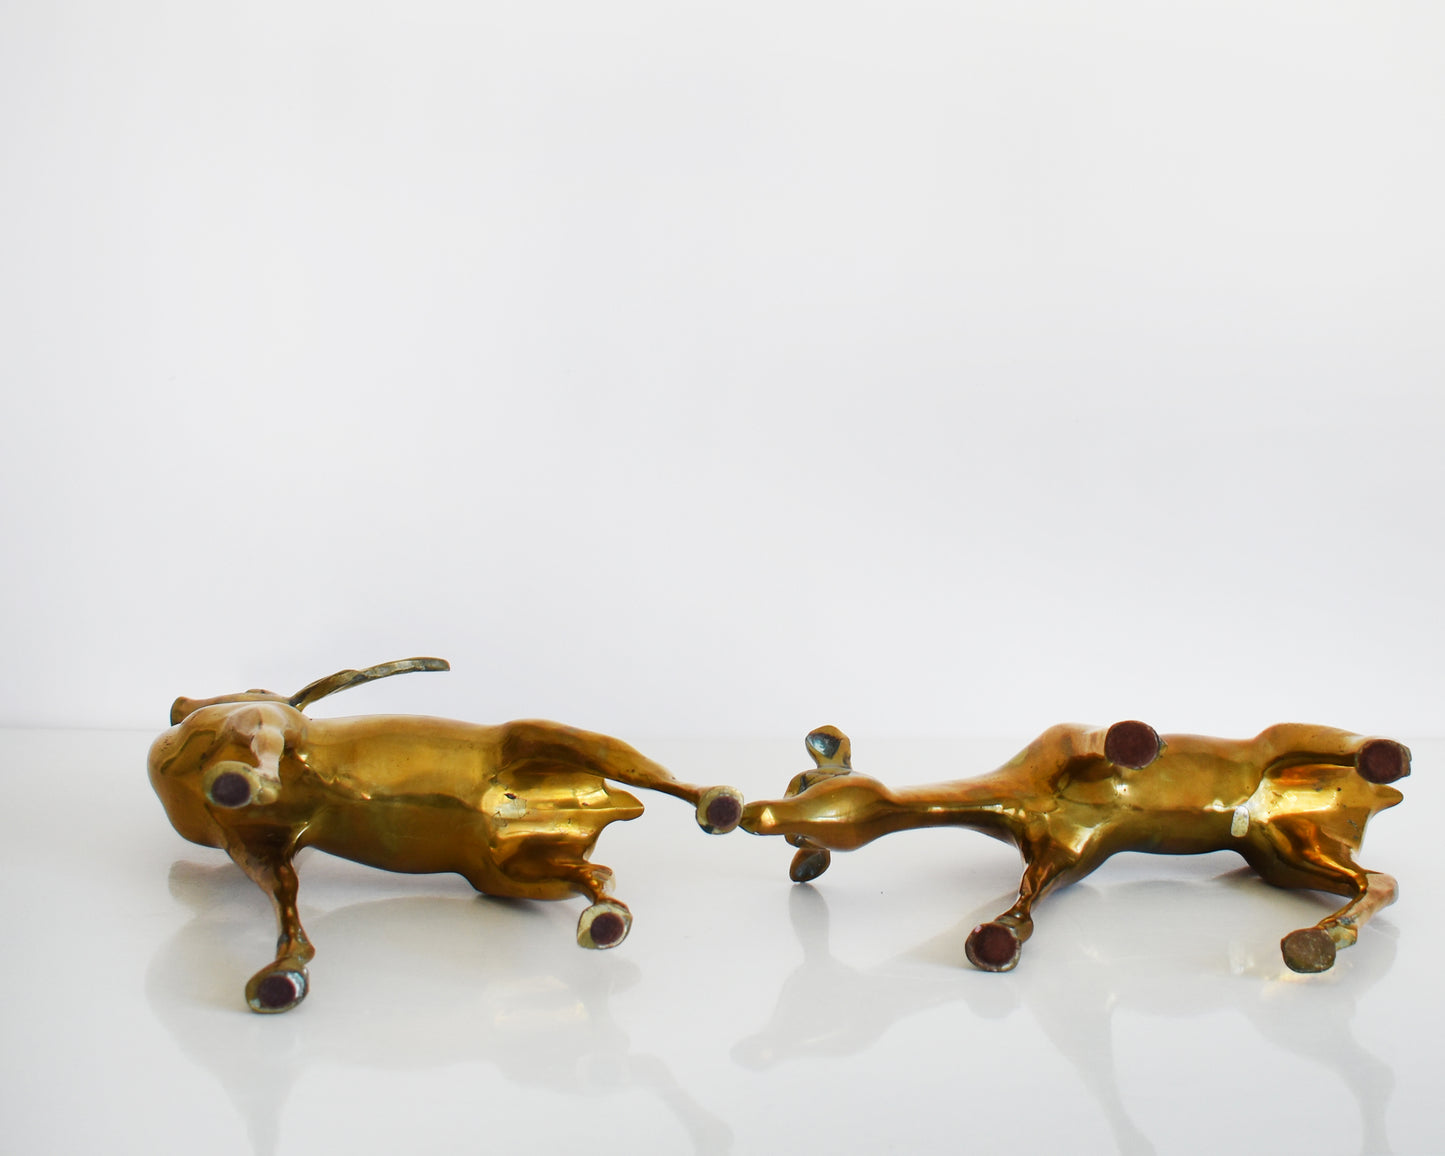 A pair of brass deer lying down showing their underside